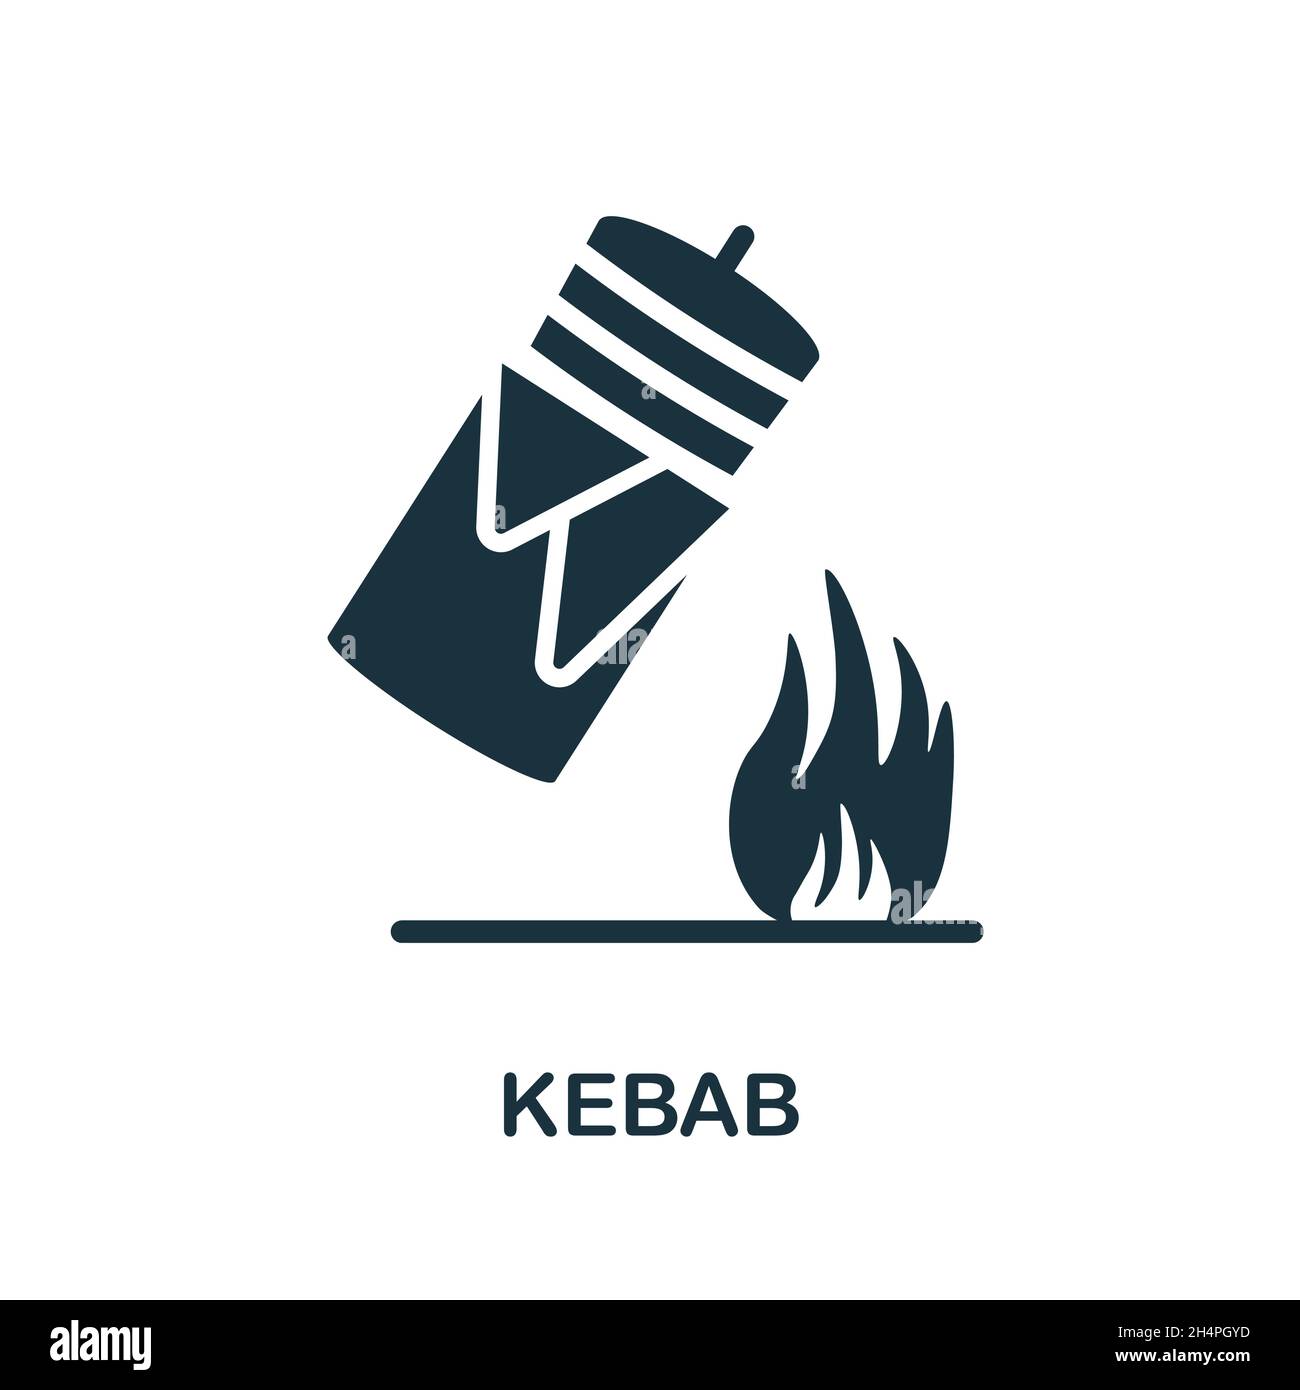 Icône Kebab.Affiche monochrome de la collection à emporter.Illustration de l'icône Creative Kebab pour la conception Web, les infographies et bien plus encore Illustration de Vecteur